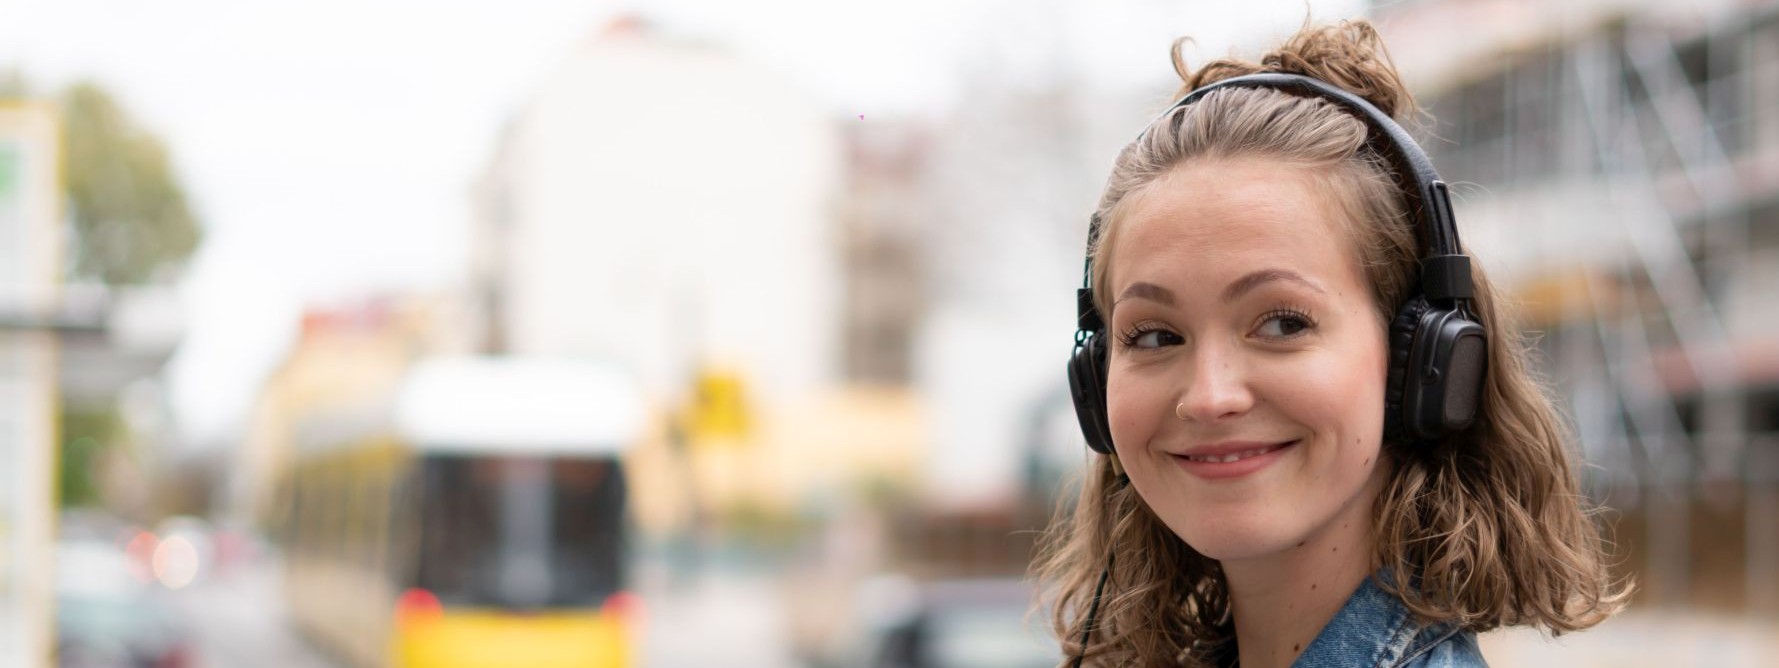 Eine etwa 20 jährige Frau steht an einer Straße und hört über Kopfhörer Musik von ihrem Handy.